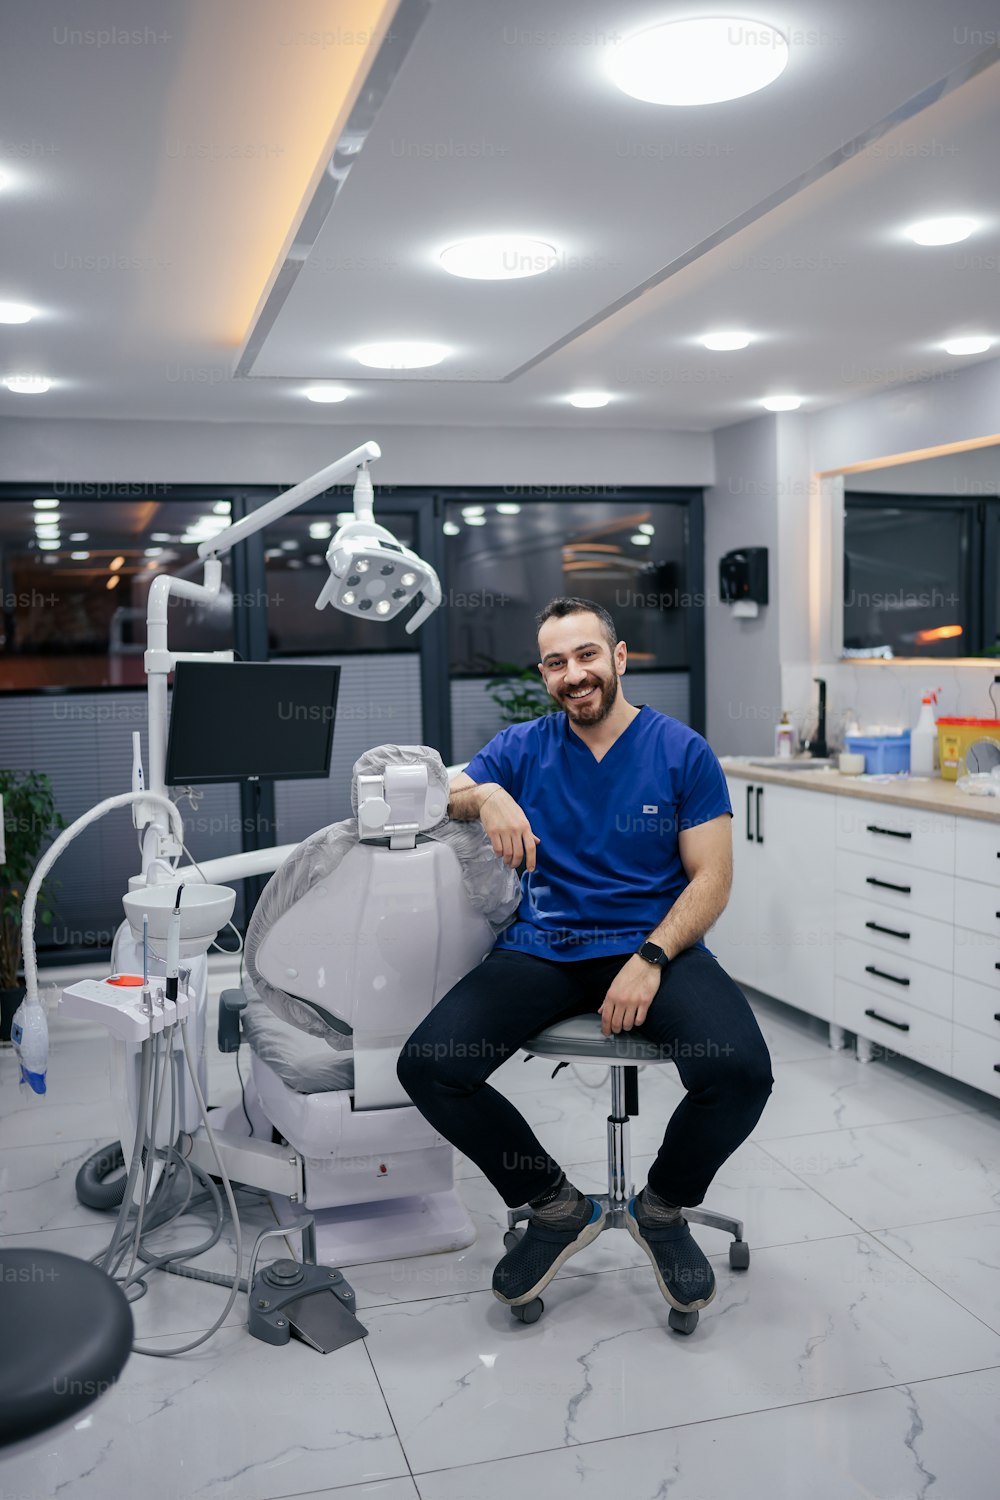 Un hombre sentado en una silla en el consultorio de un dentista